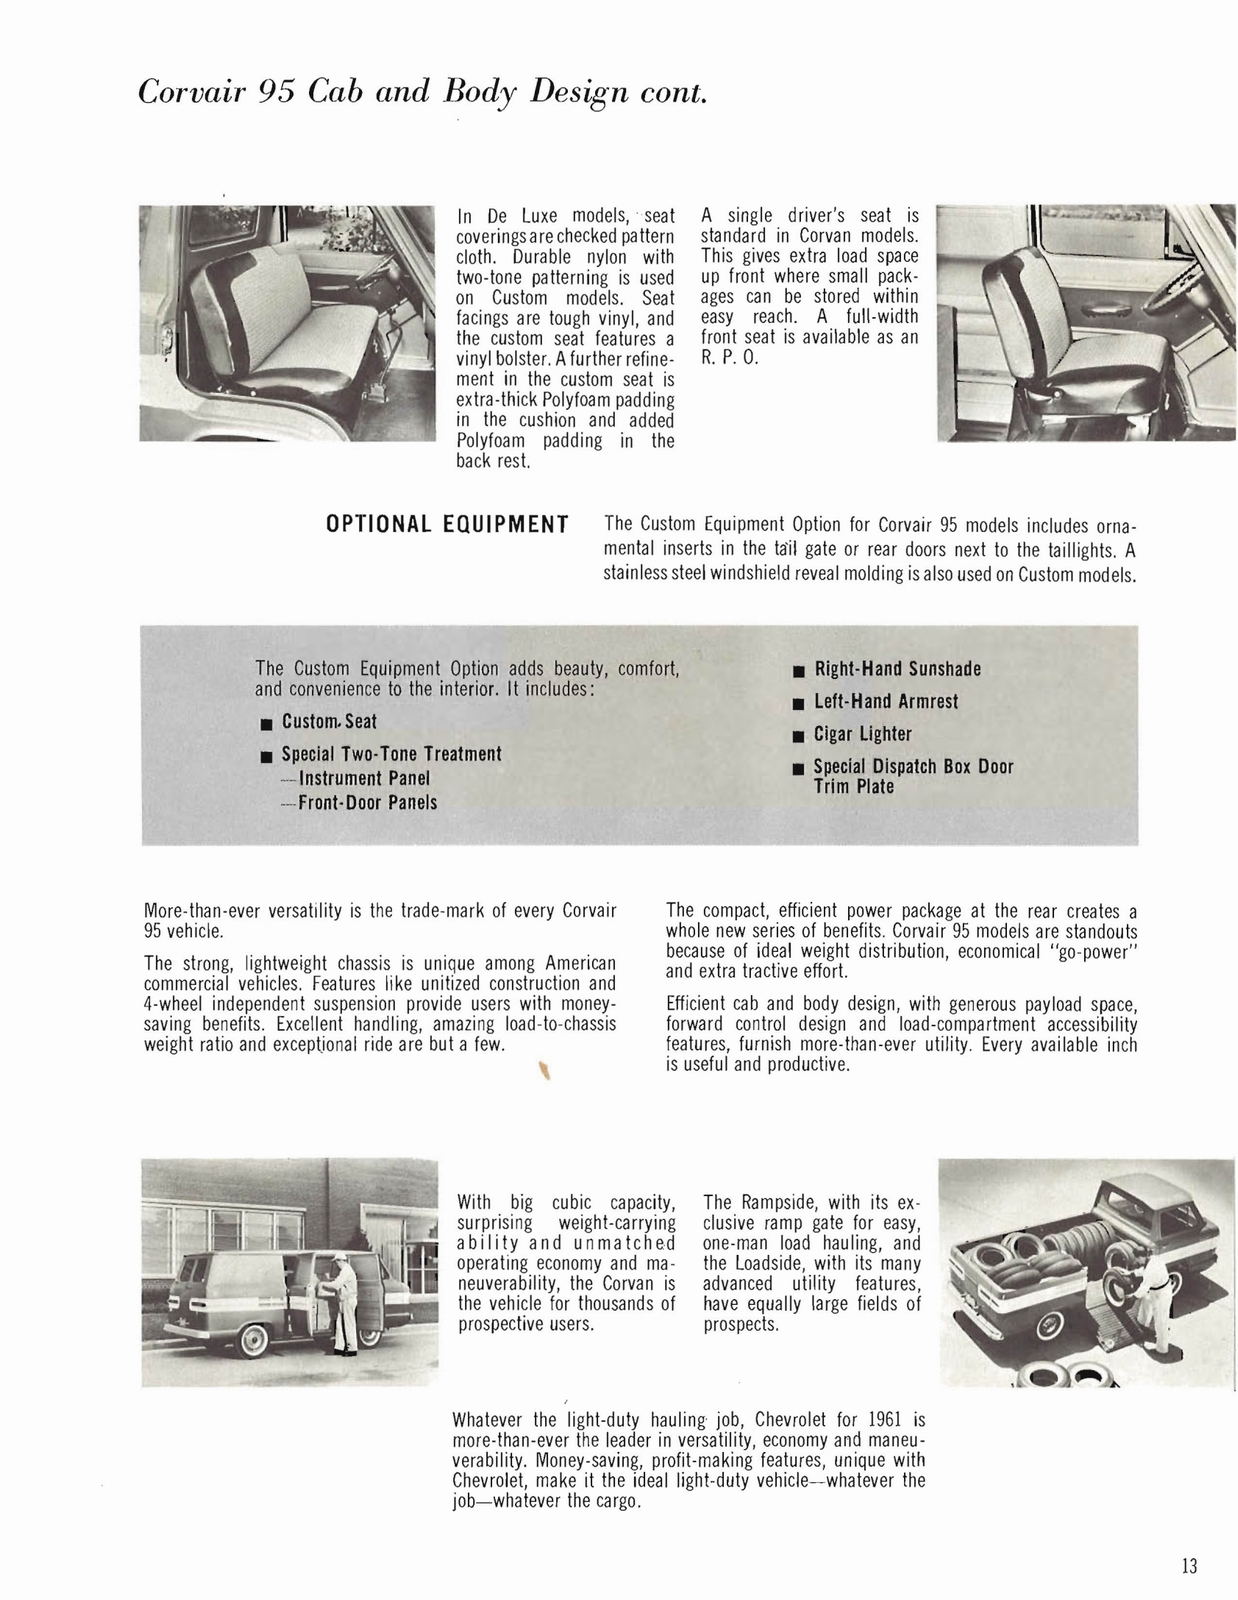 n_1961 Chevrolet Trucks Booklet-13.jpg